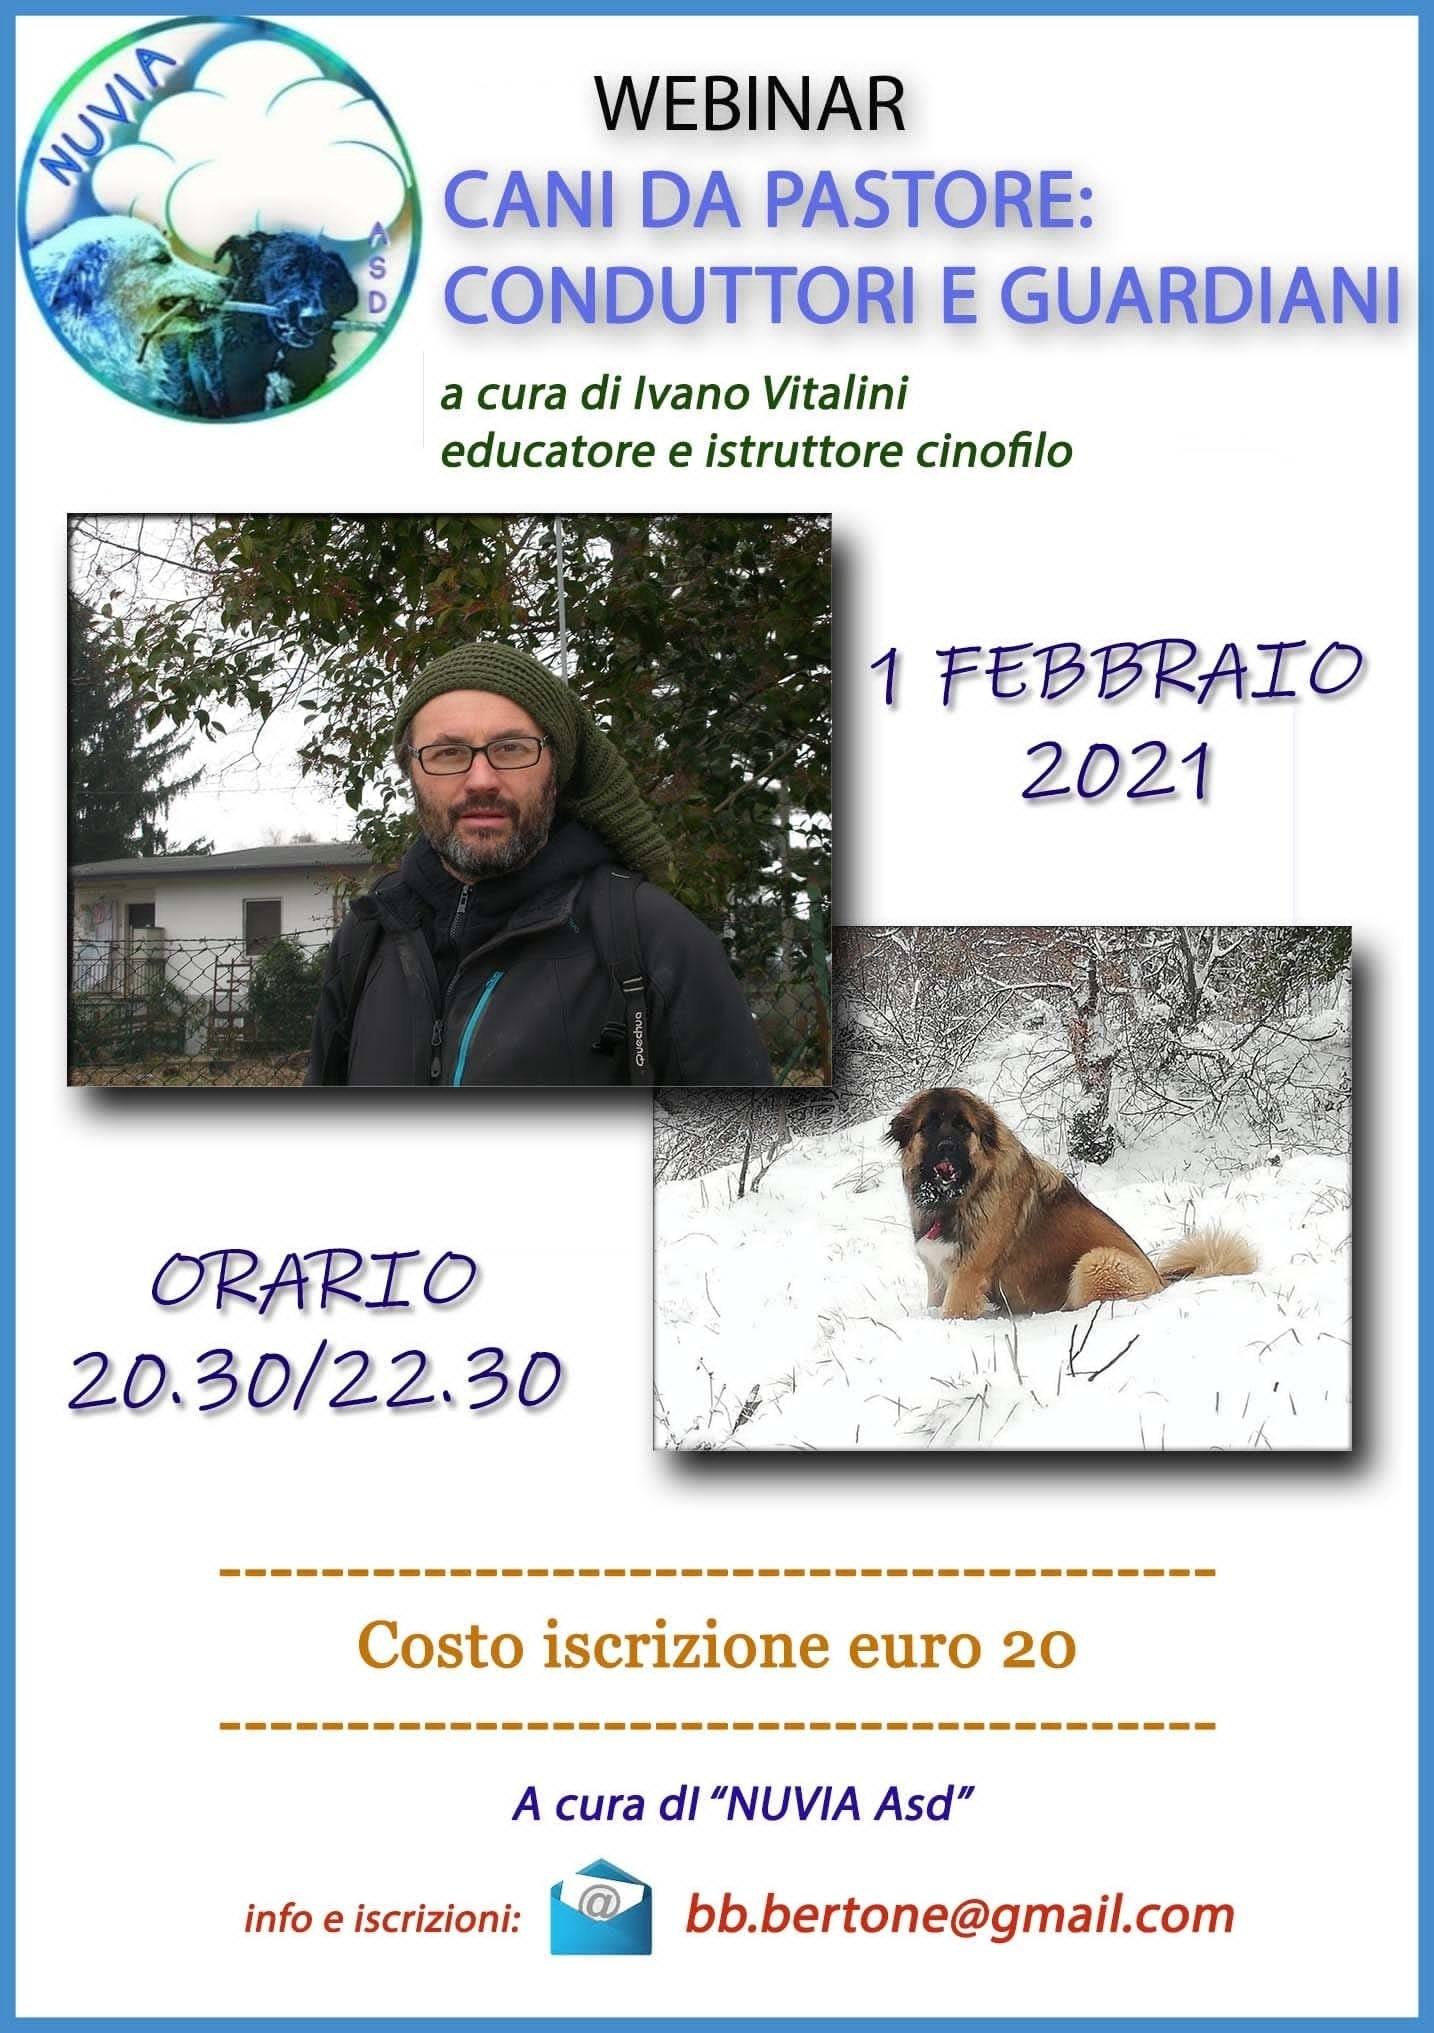 Webinar 1 Febbraio 2020 - Cani da Pastore: conduttori e guardiani Ivano Vitalini